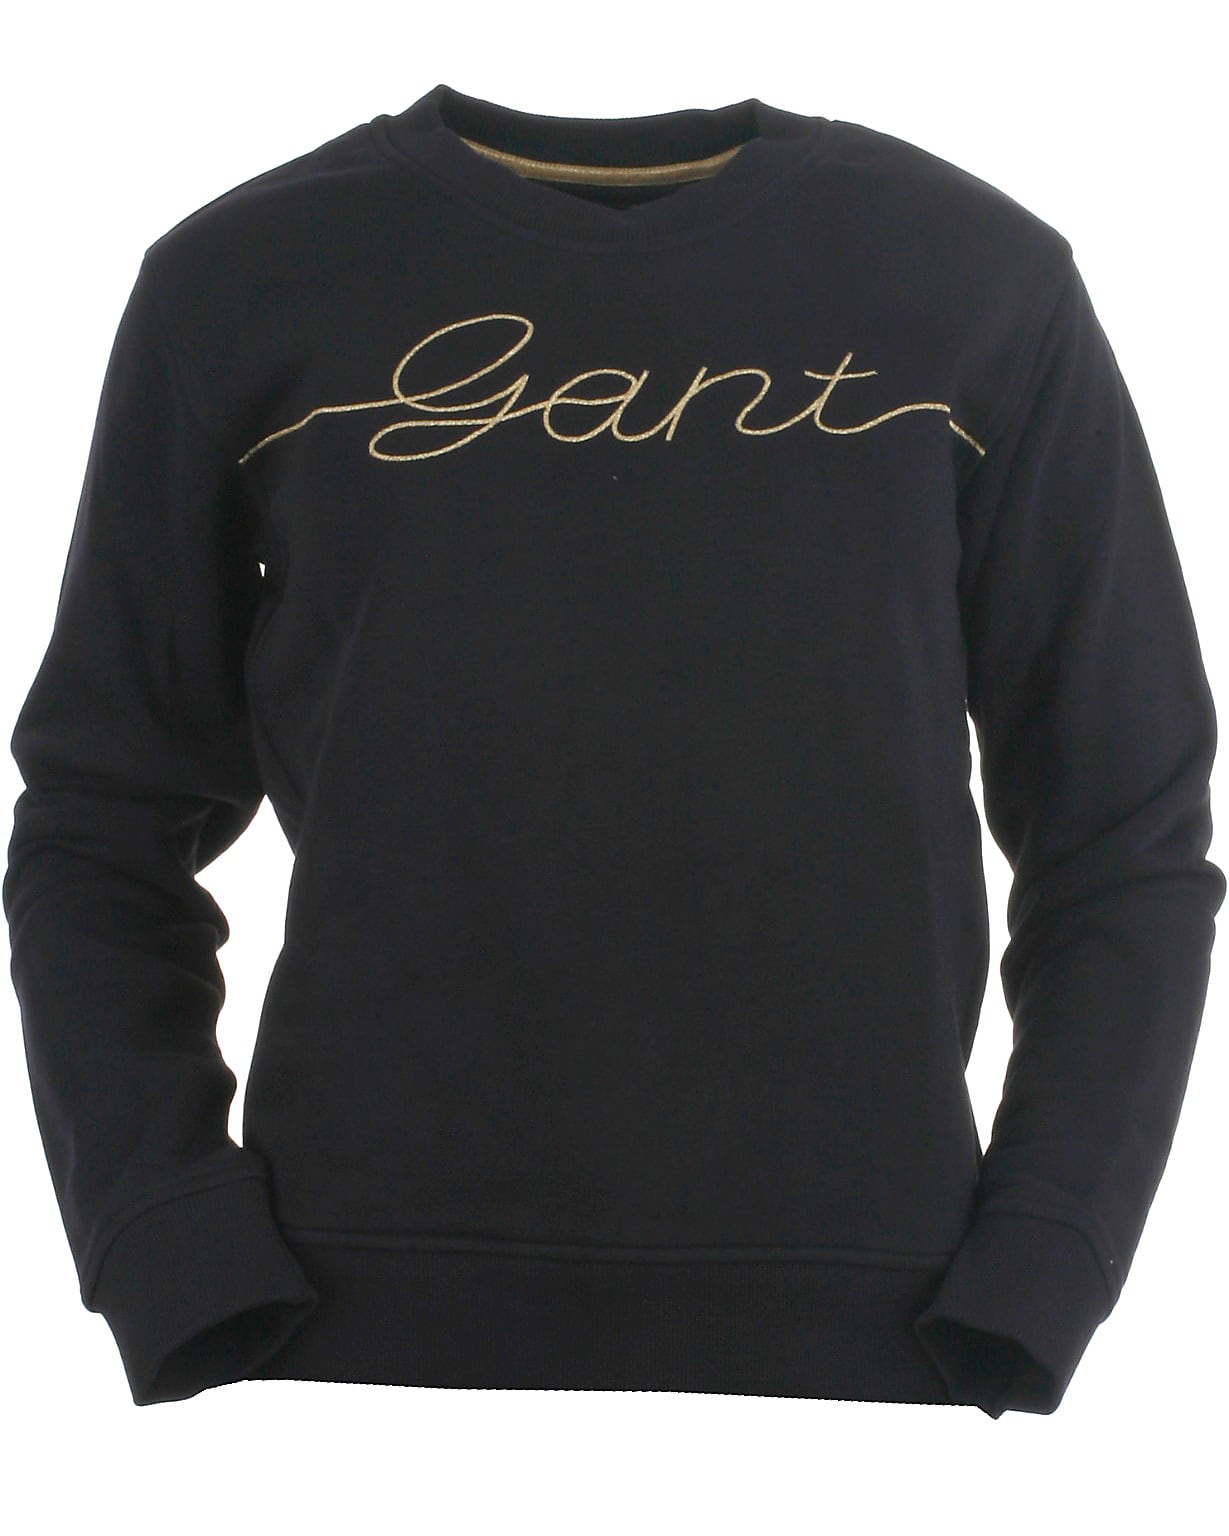 Billede af Gant sweatshirt, Script, eveningblue - 152,146/152